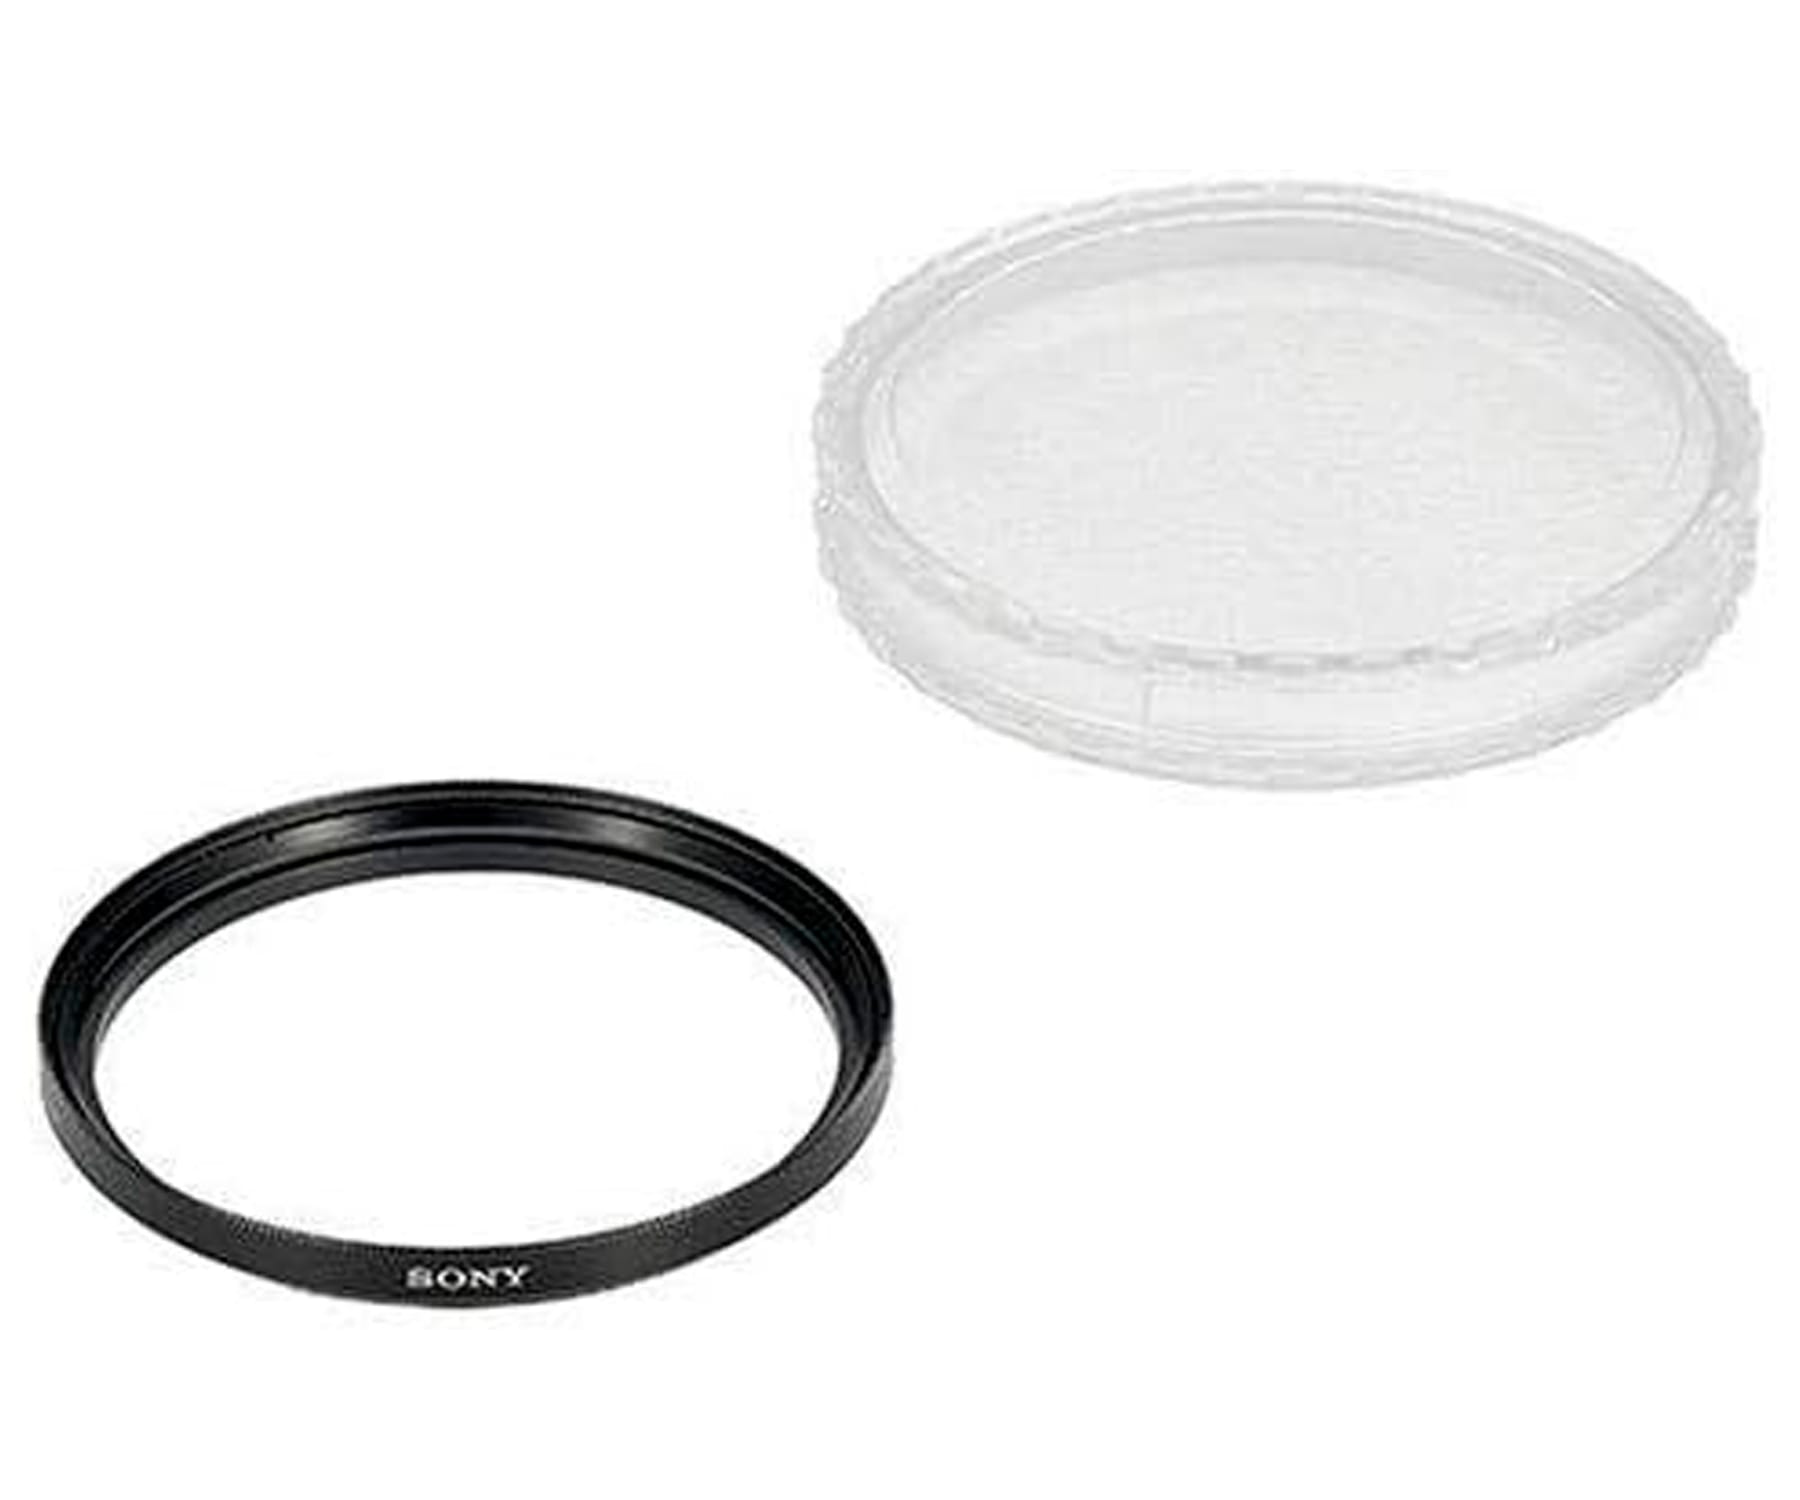 SONY VF74MP / Filtro transparente compatible con lentes de 74mm